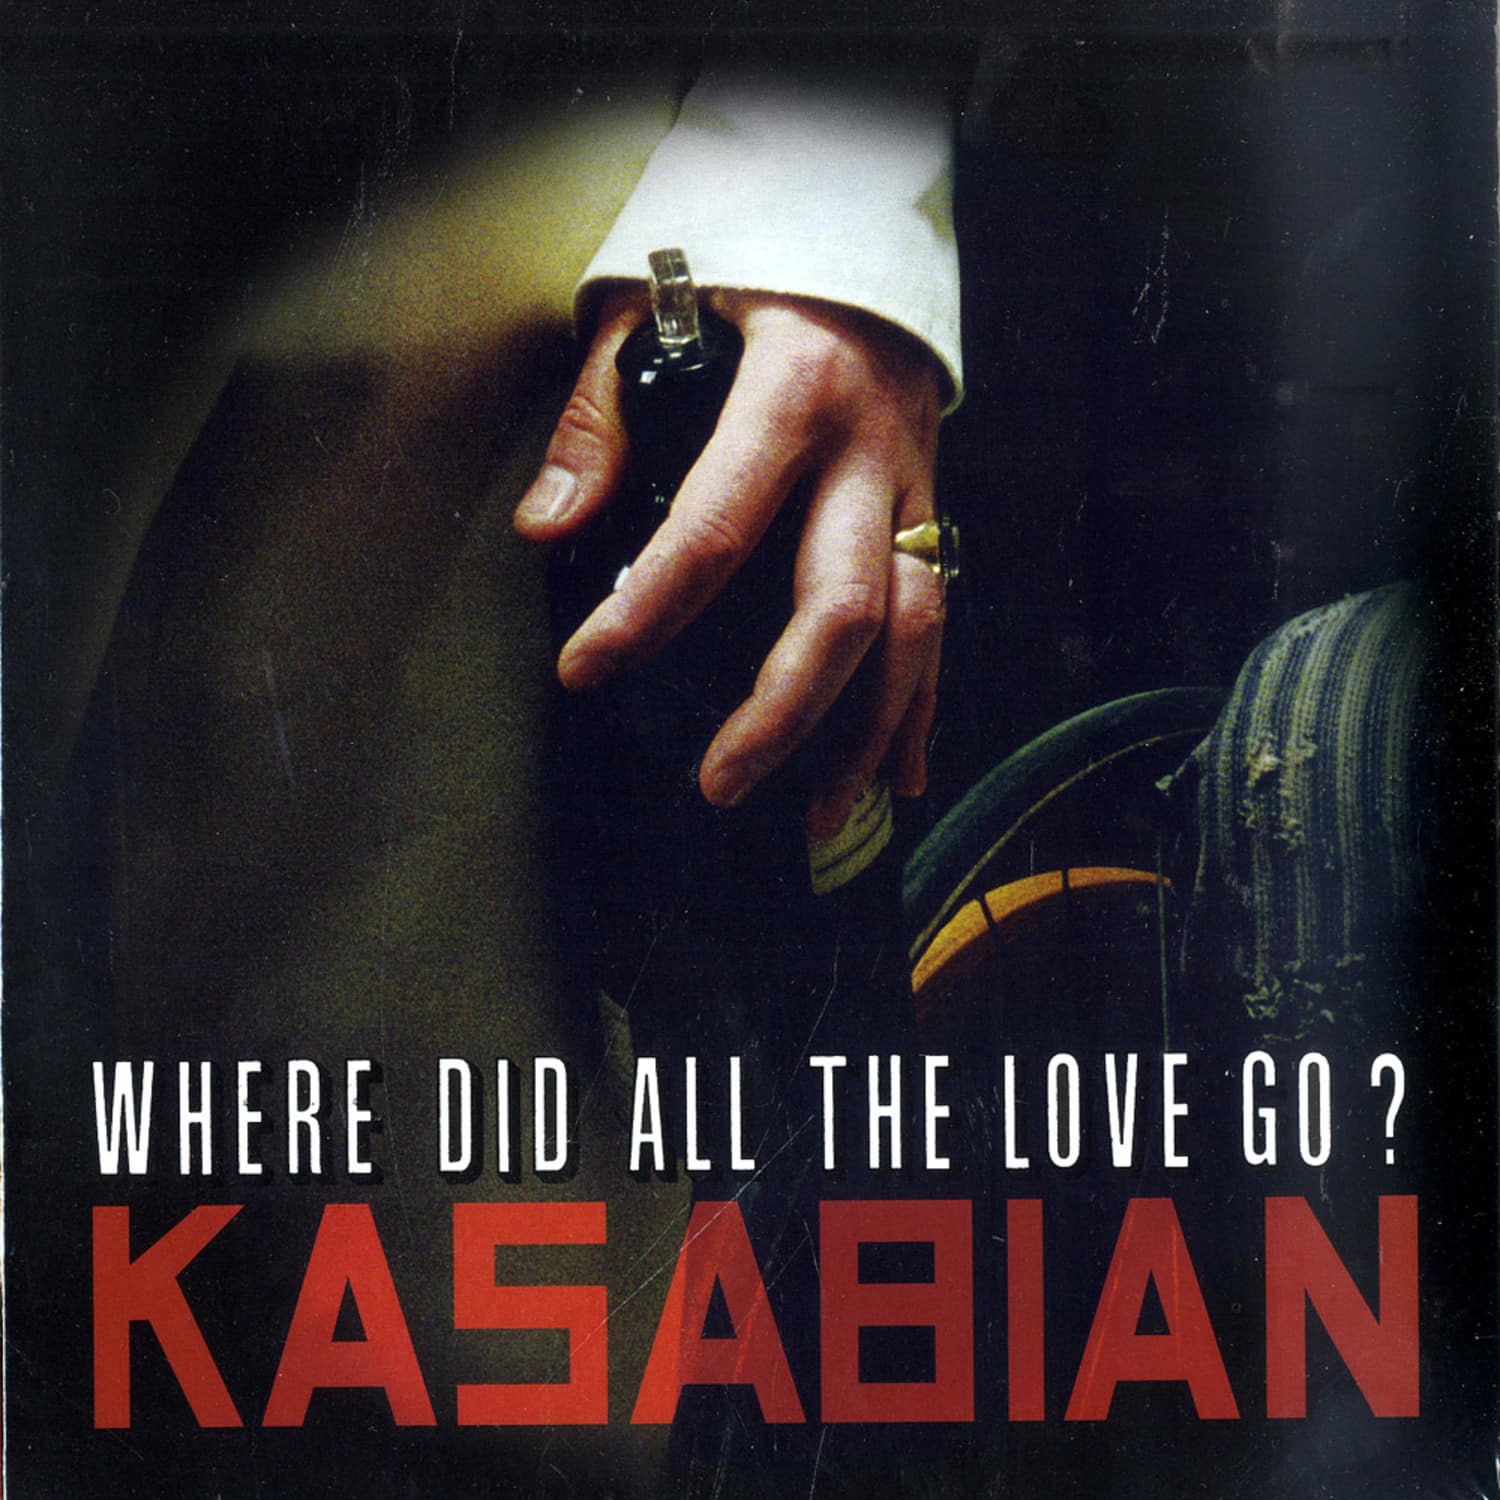 Kasabian - WHERE DID ALL THE LOVE GO 